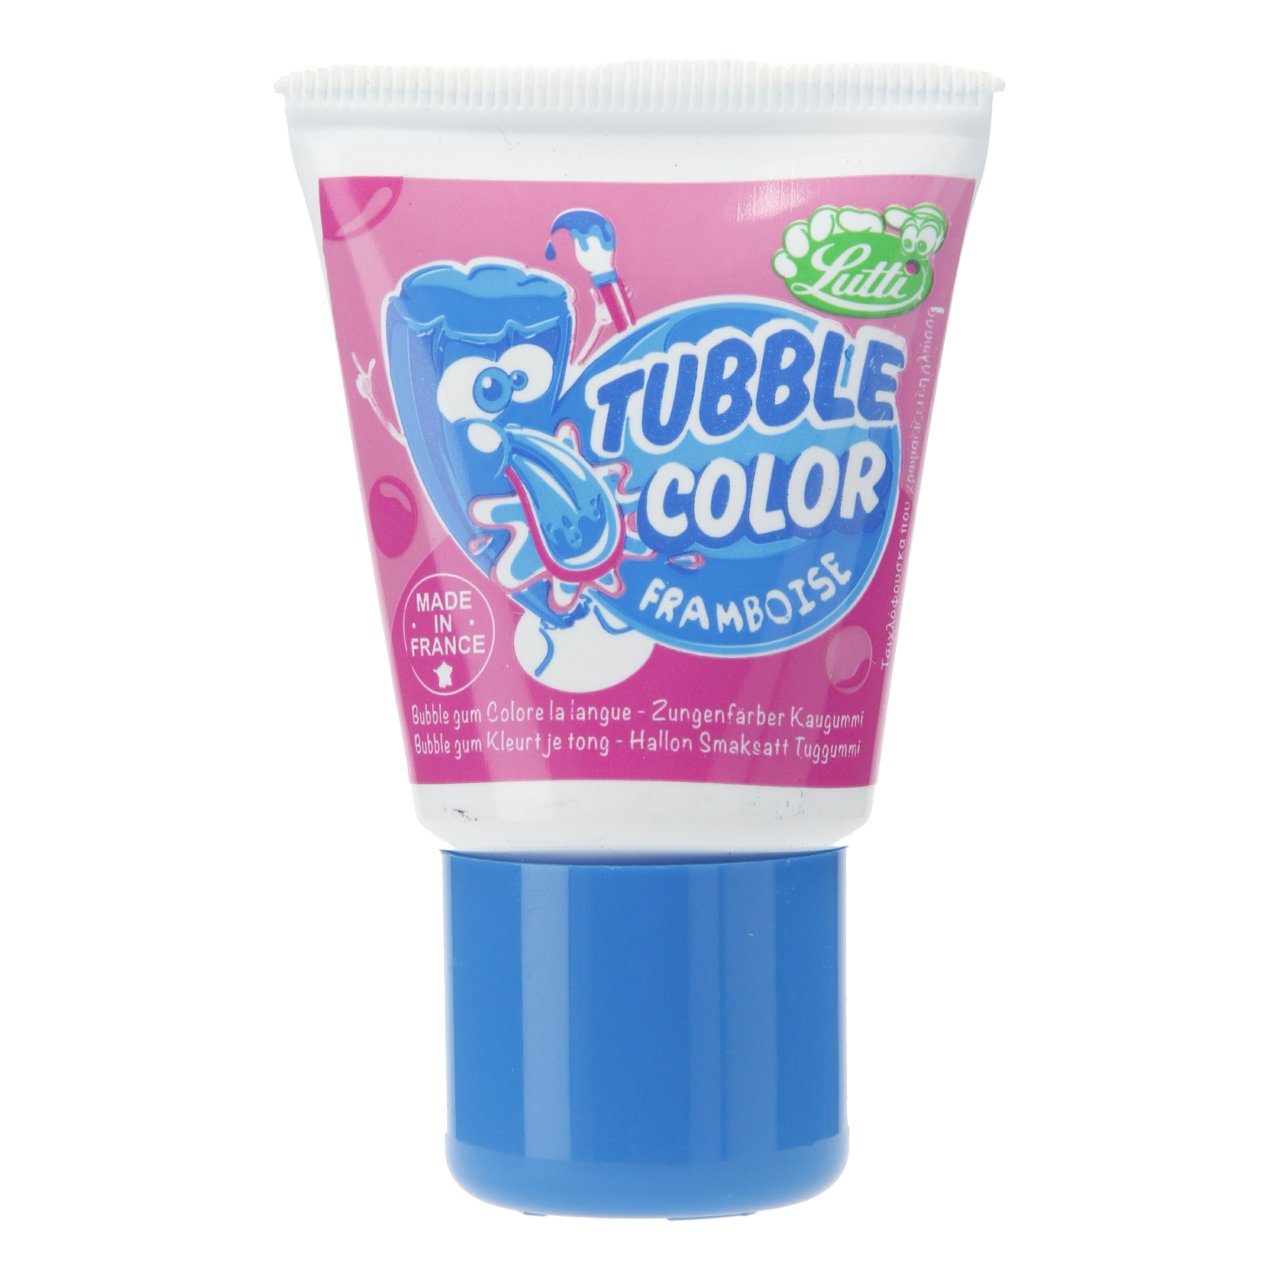 Tubble gum tongue painter